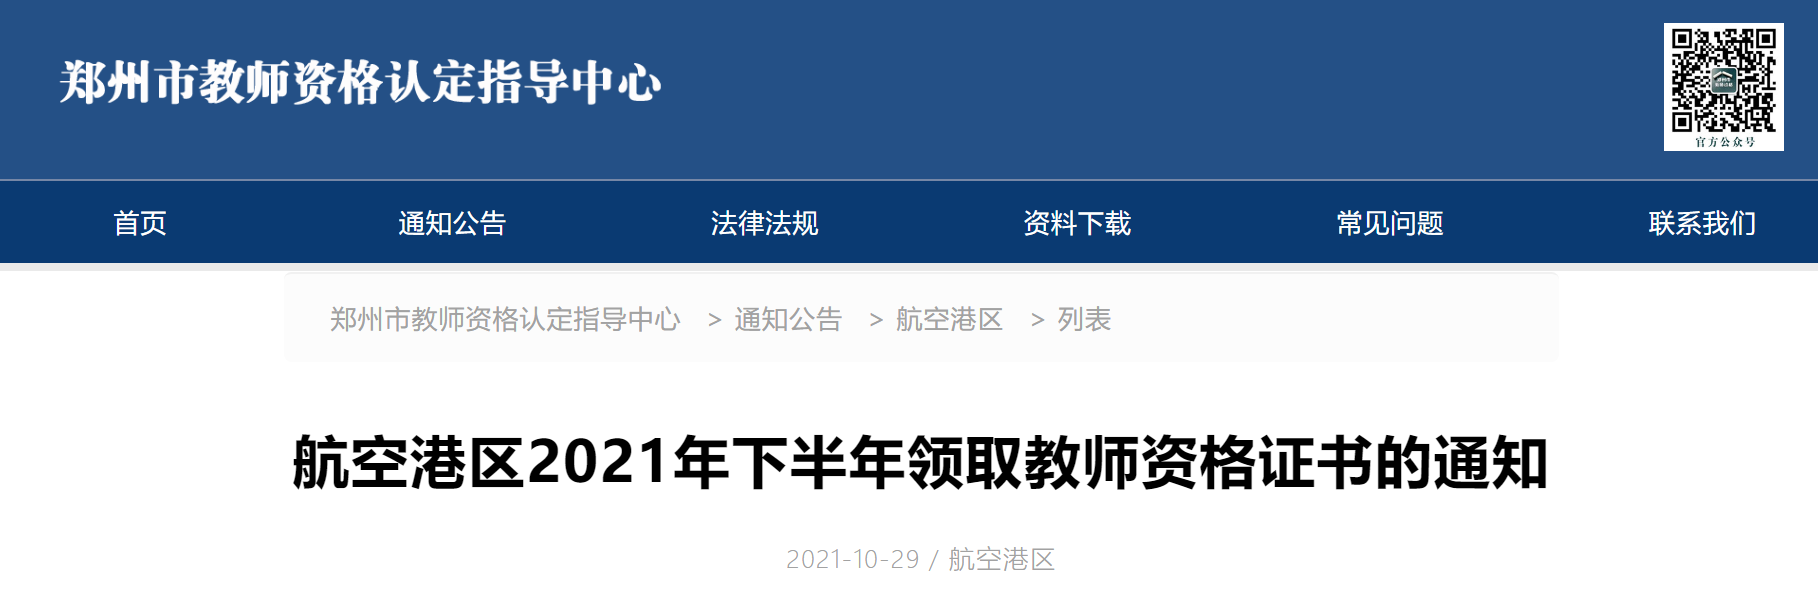 2021下半年河南郑州航空港区教师资格证书领取通知